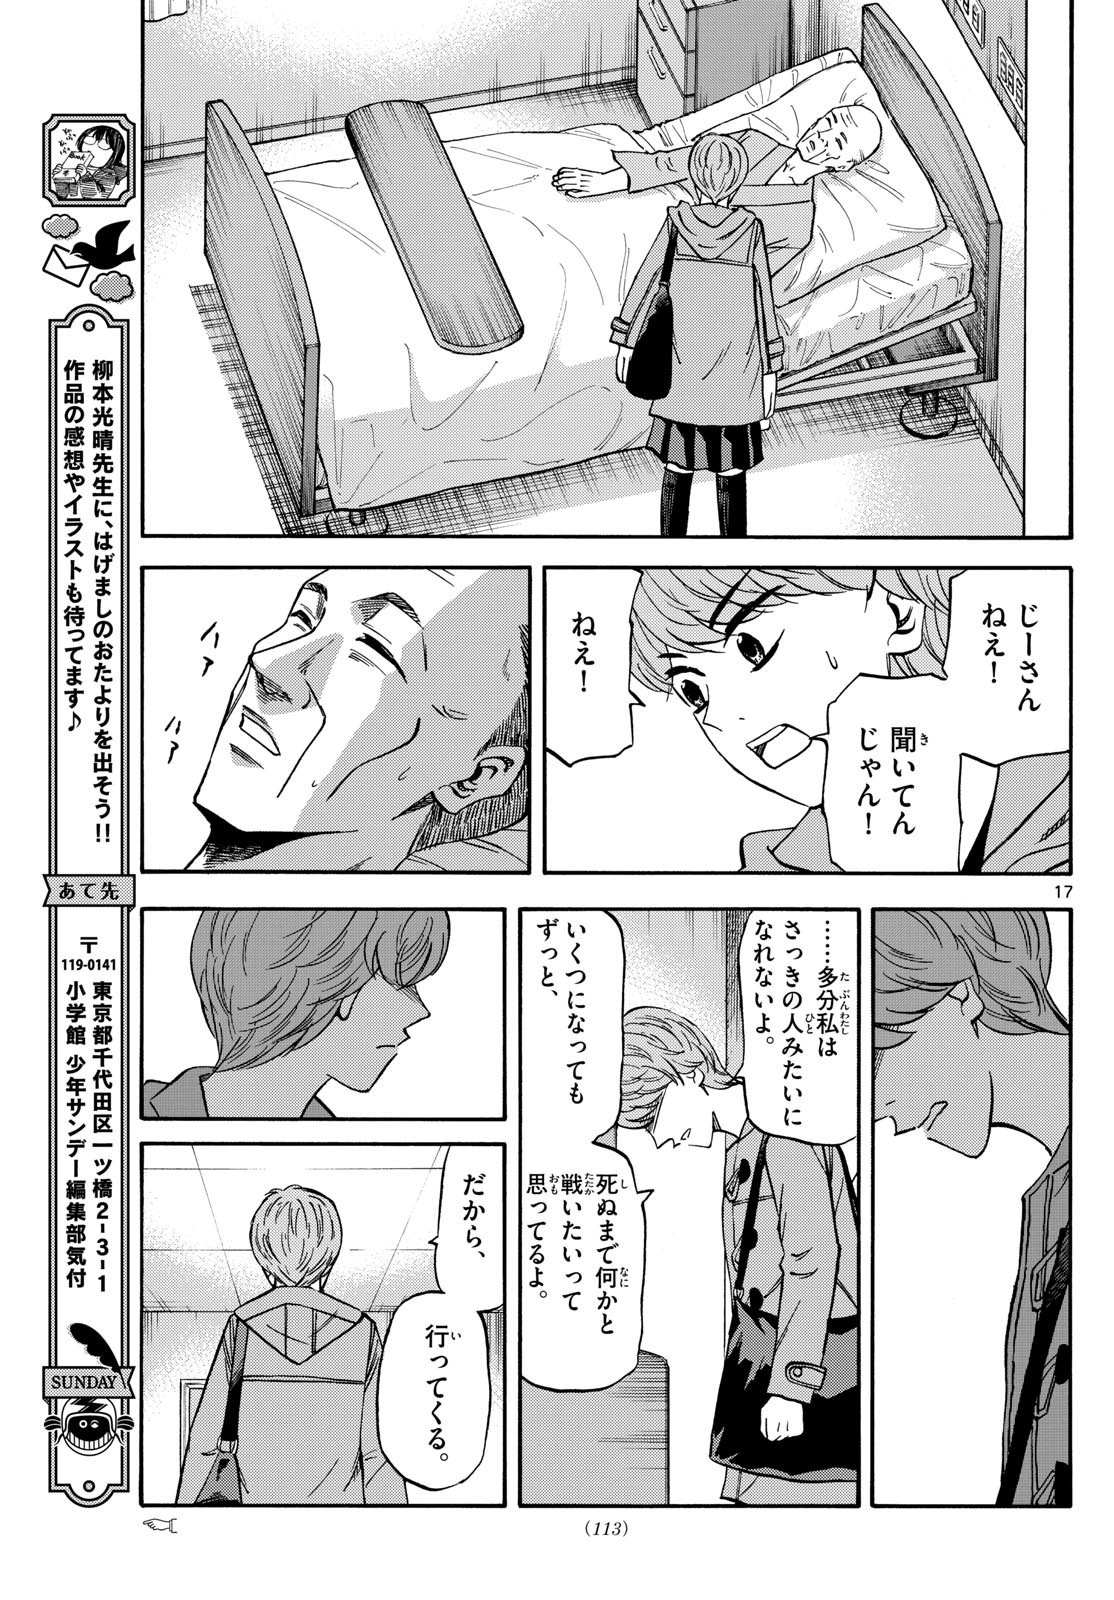 Ryu-to-Ichigo - Chapter 174 - Page 17